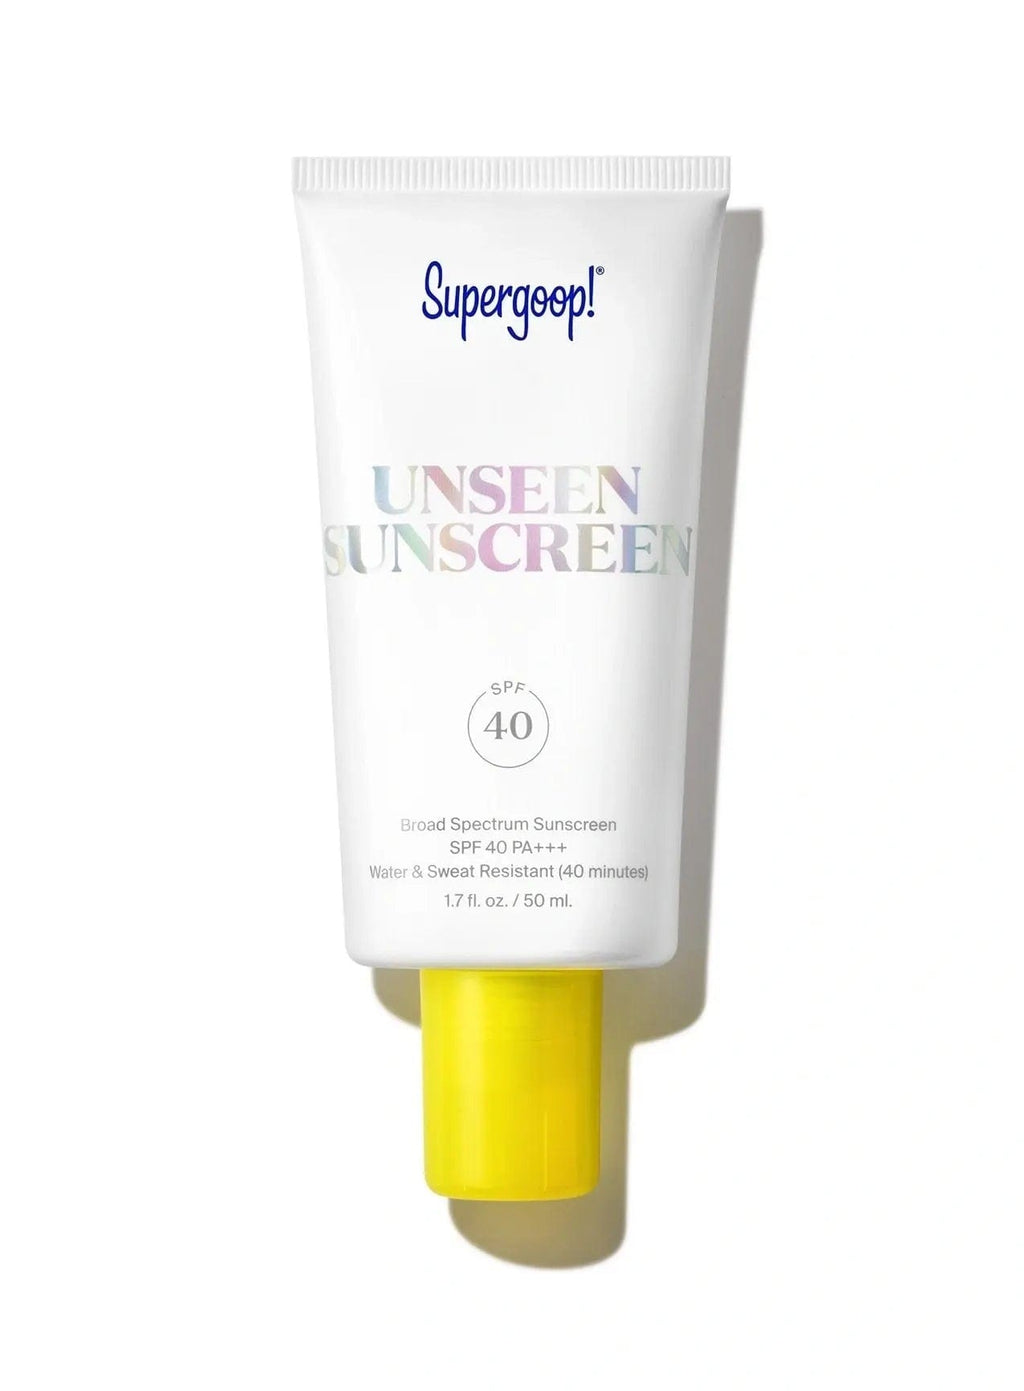 Supergoop! Sunscreen Unseen Sunscreen SPF 40